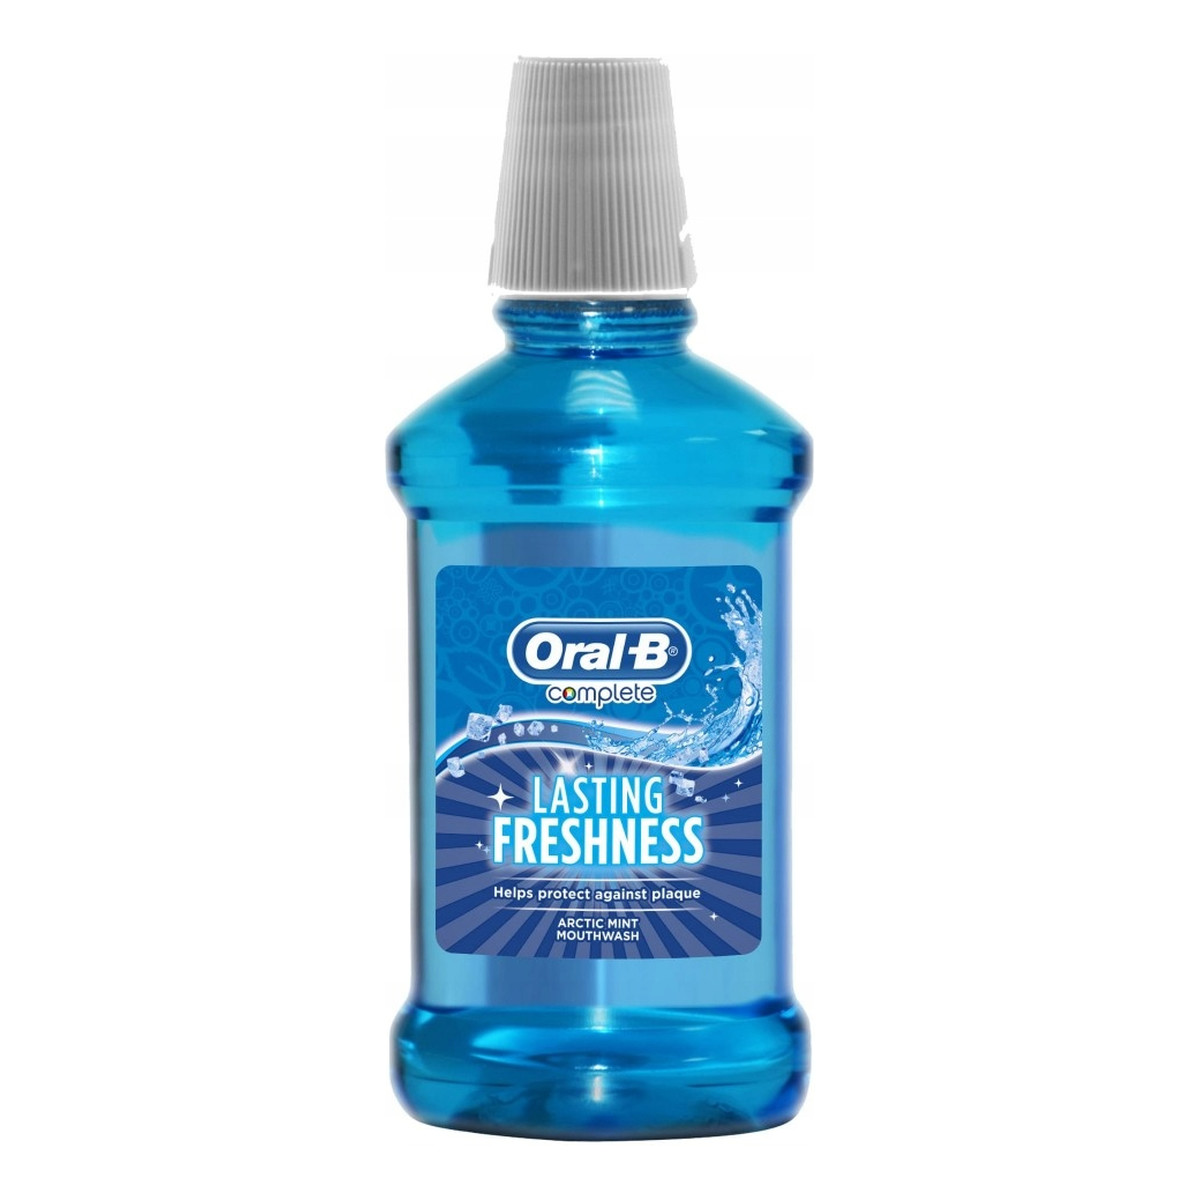 Oral-B Complete lasting freshness płyn do płukania jamy ustnej arctic mint 250ml